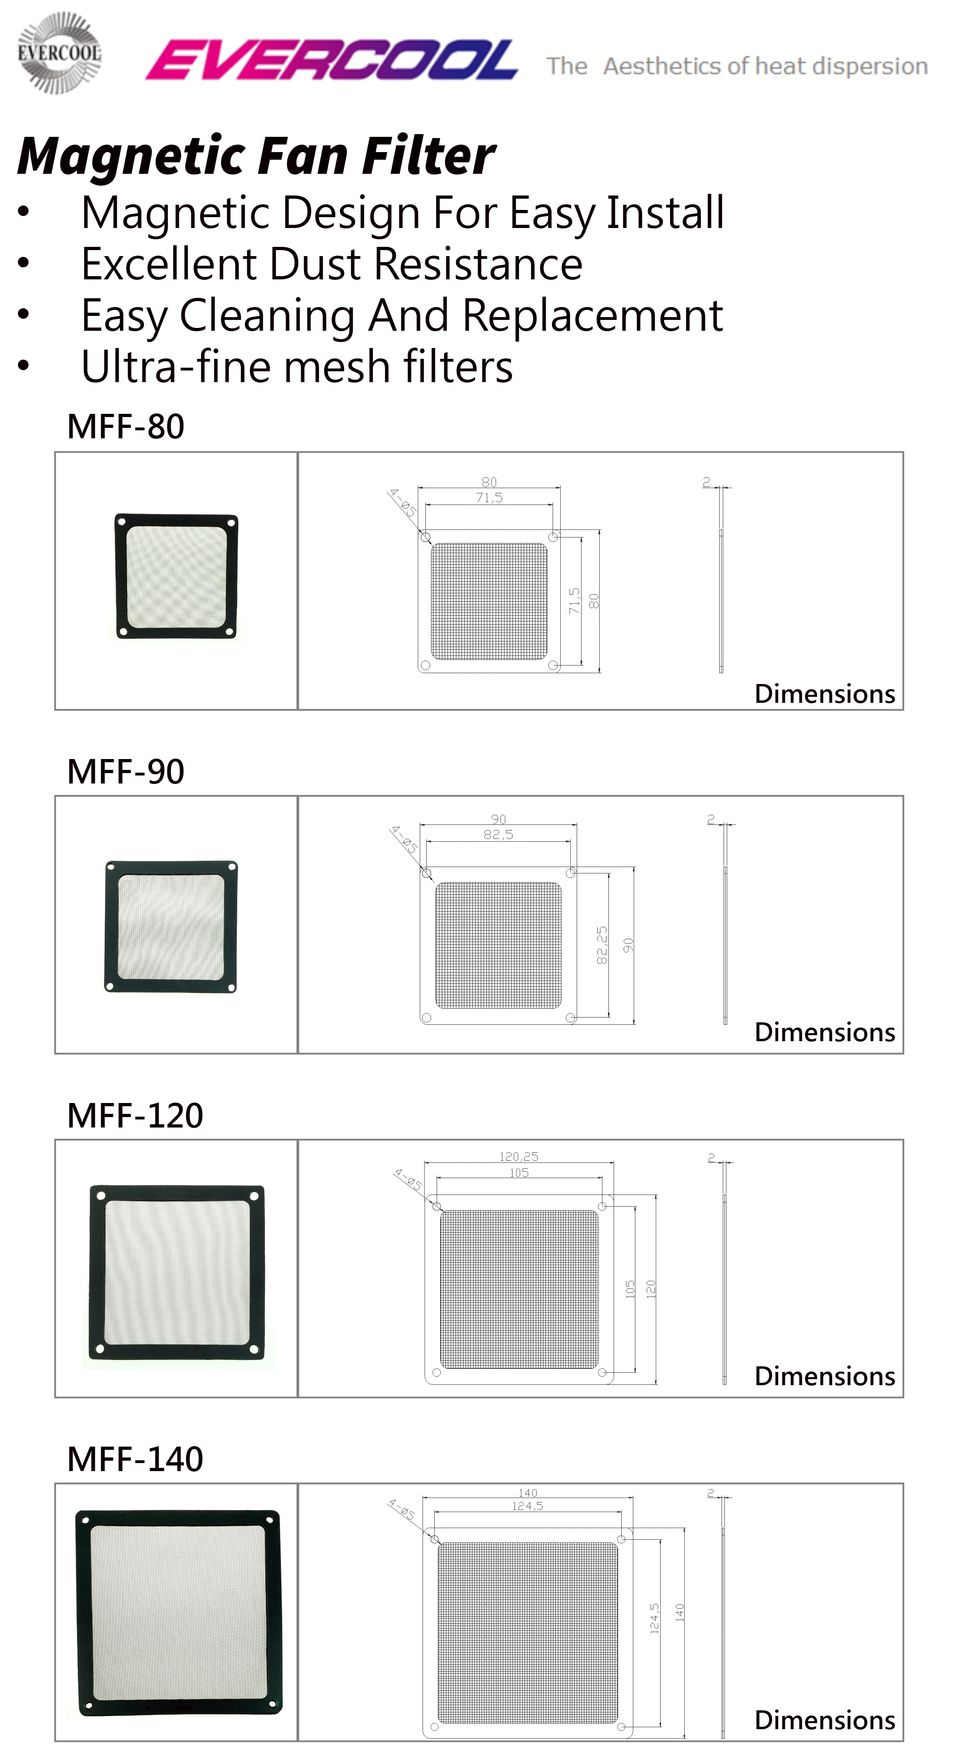 Спецификация и размерная диаграмма магнитного пылезащитного вентиляторного фильтра